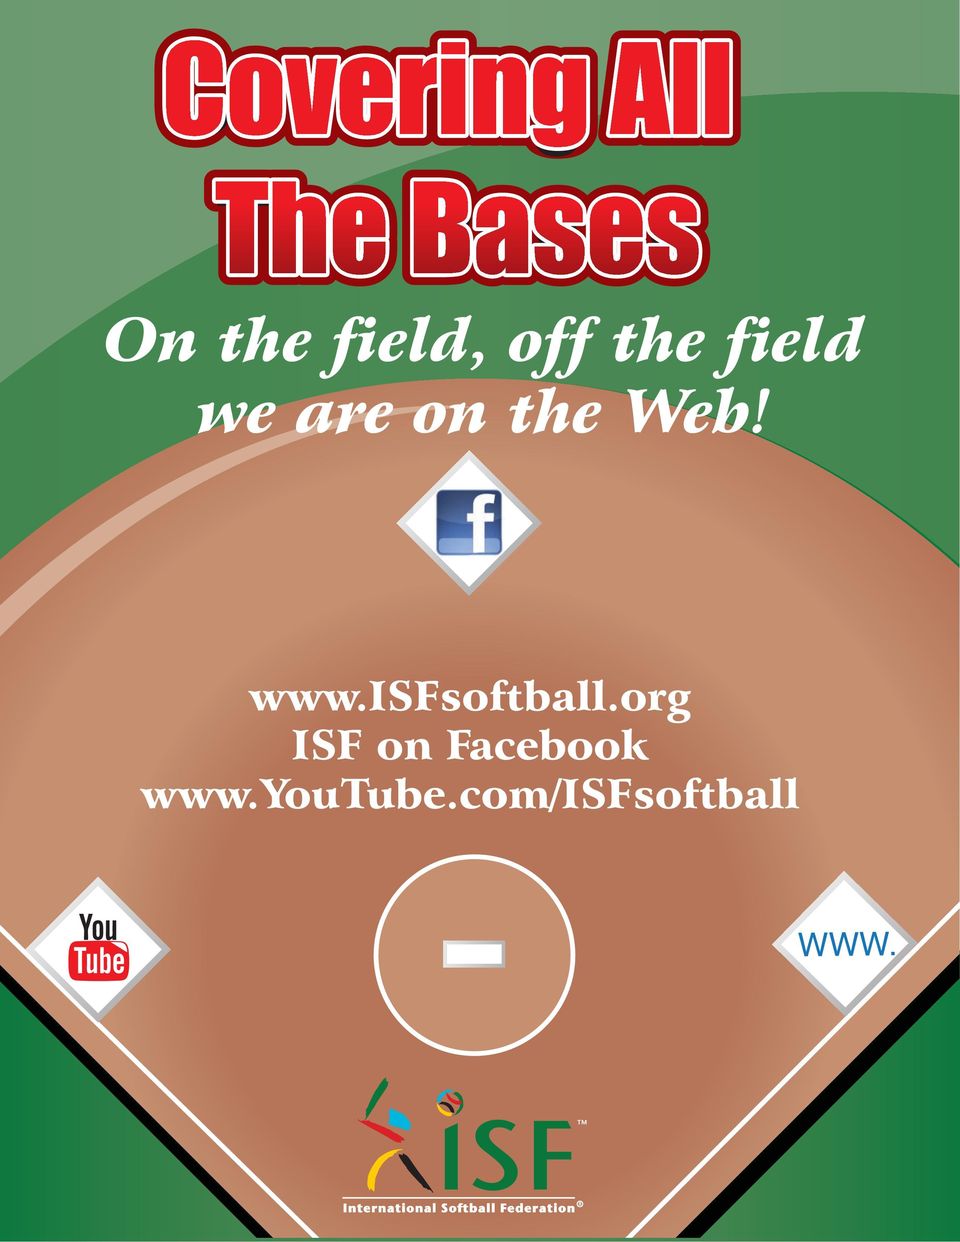 Web! www.isfsoftball.